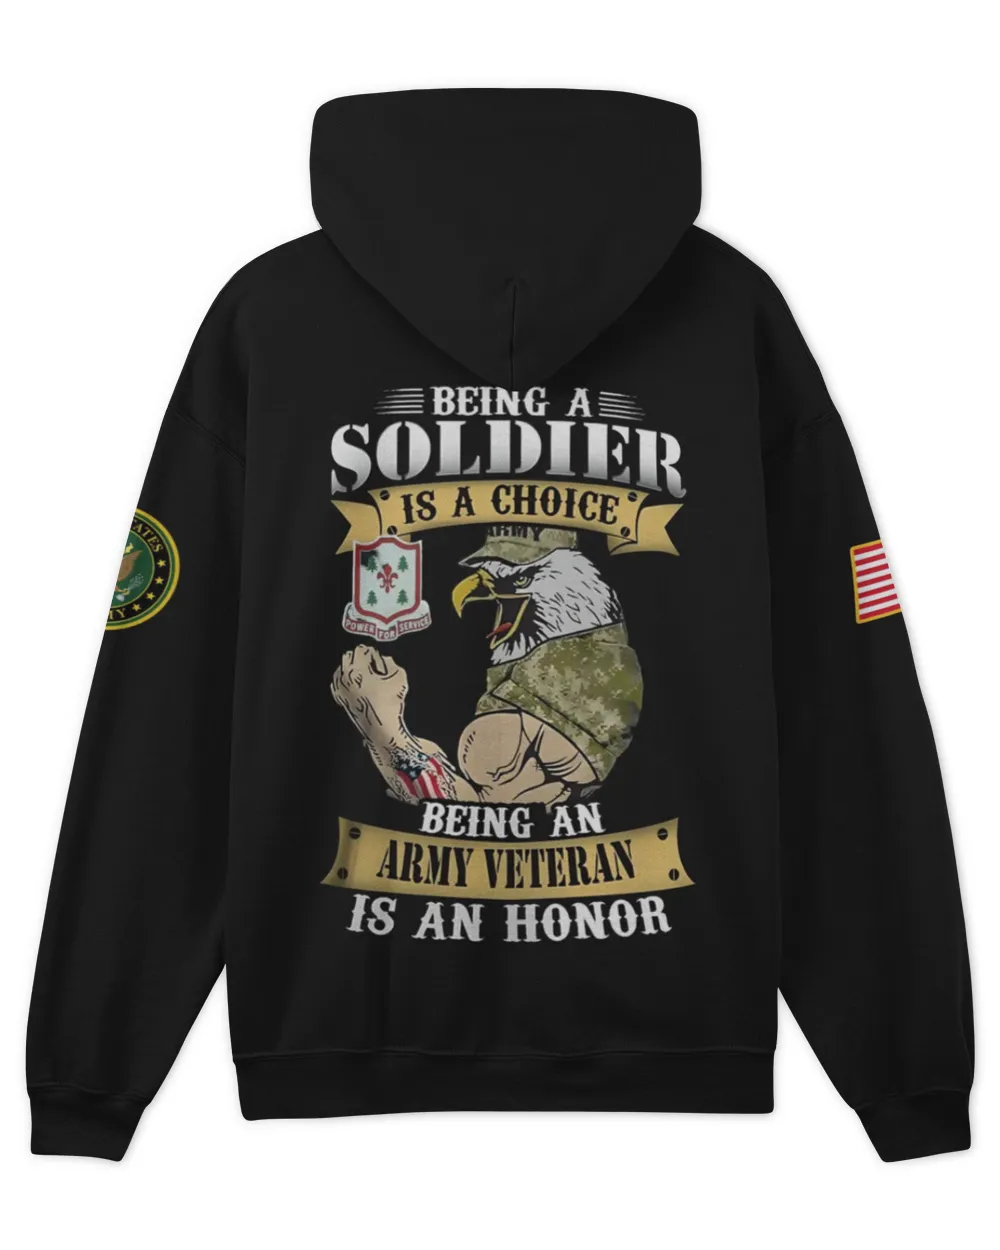 43rd Engineer Battalion  Tshirt